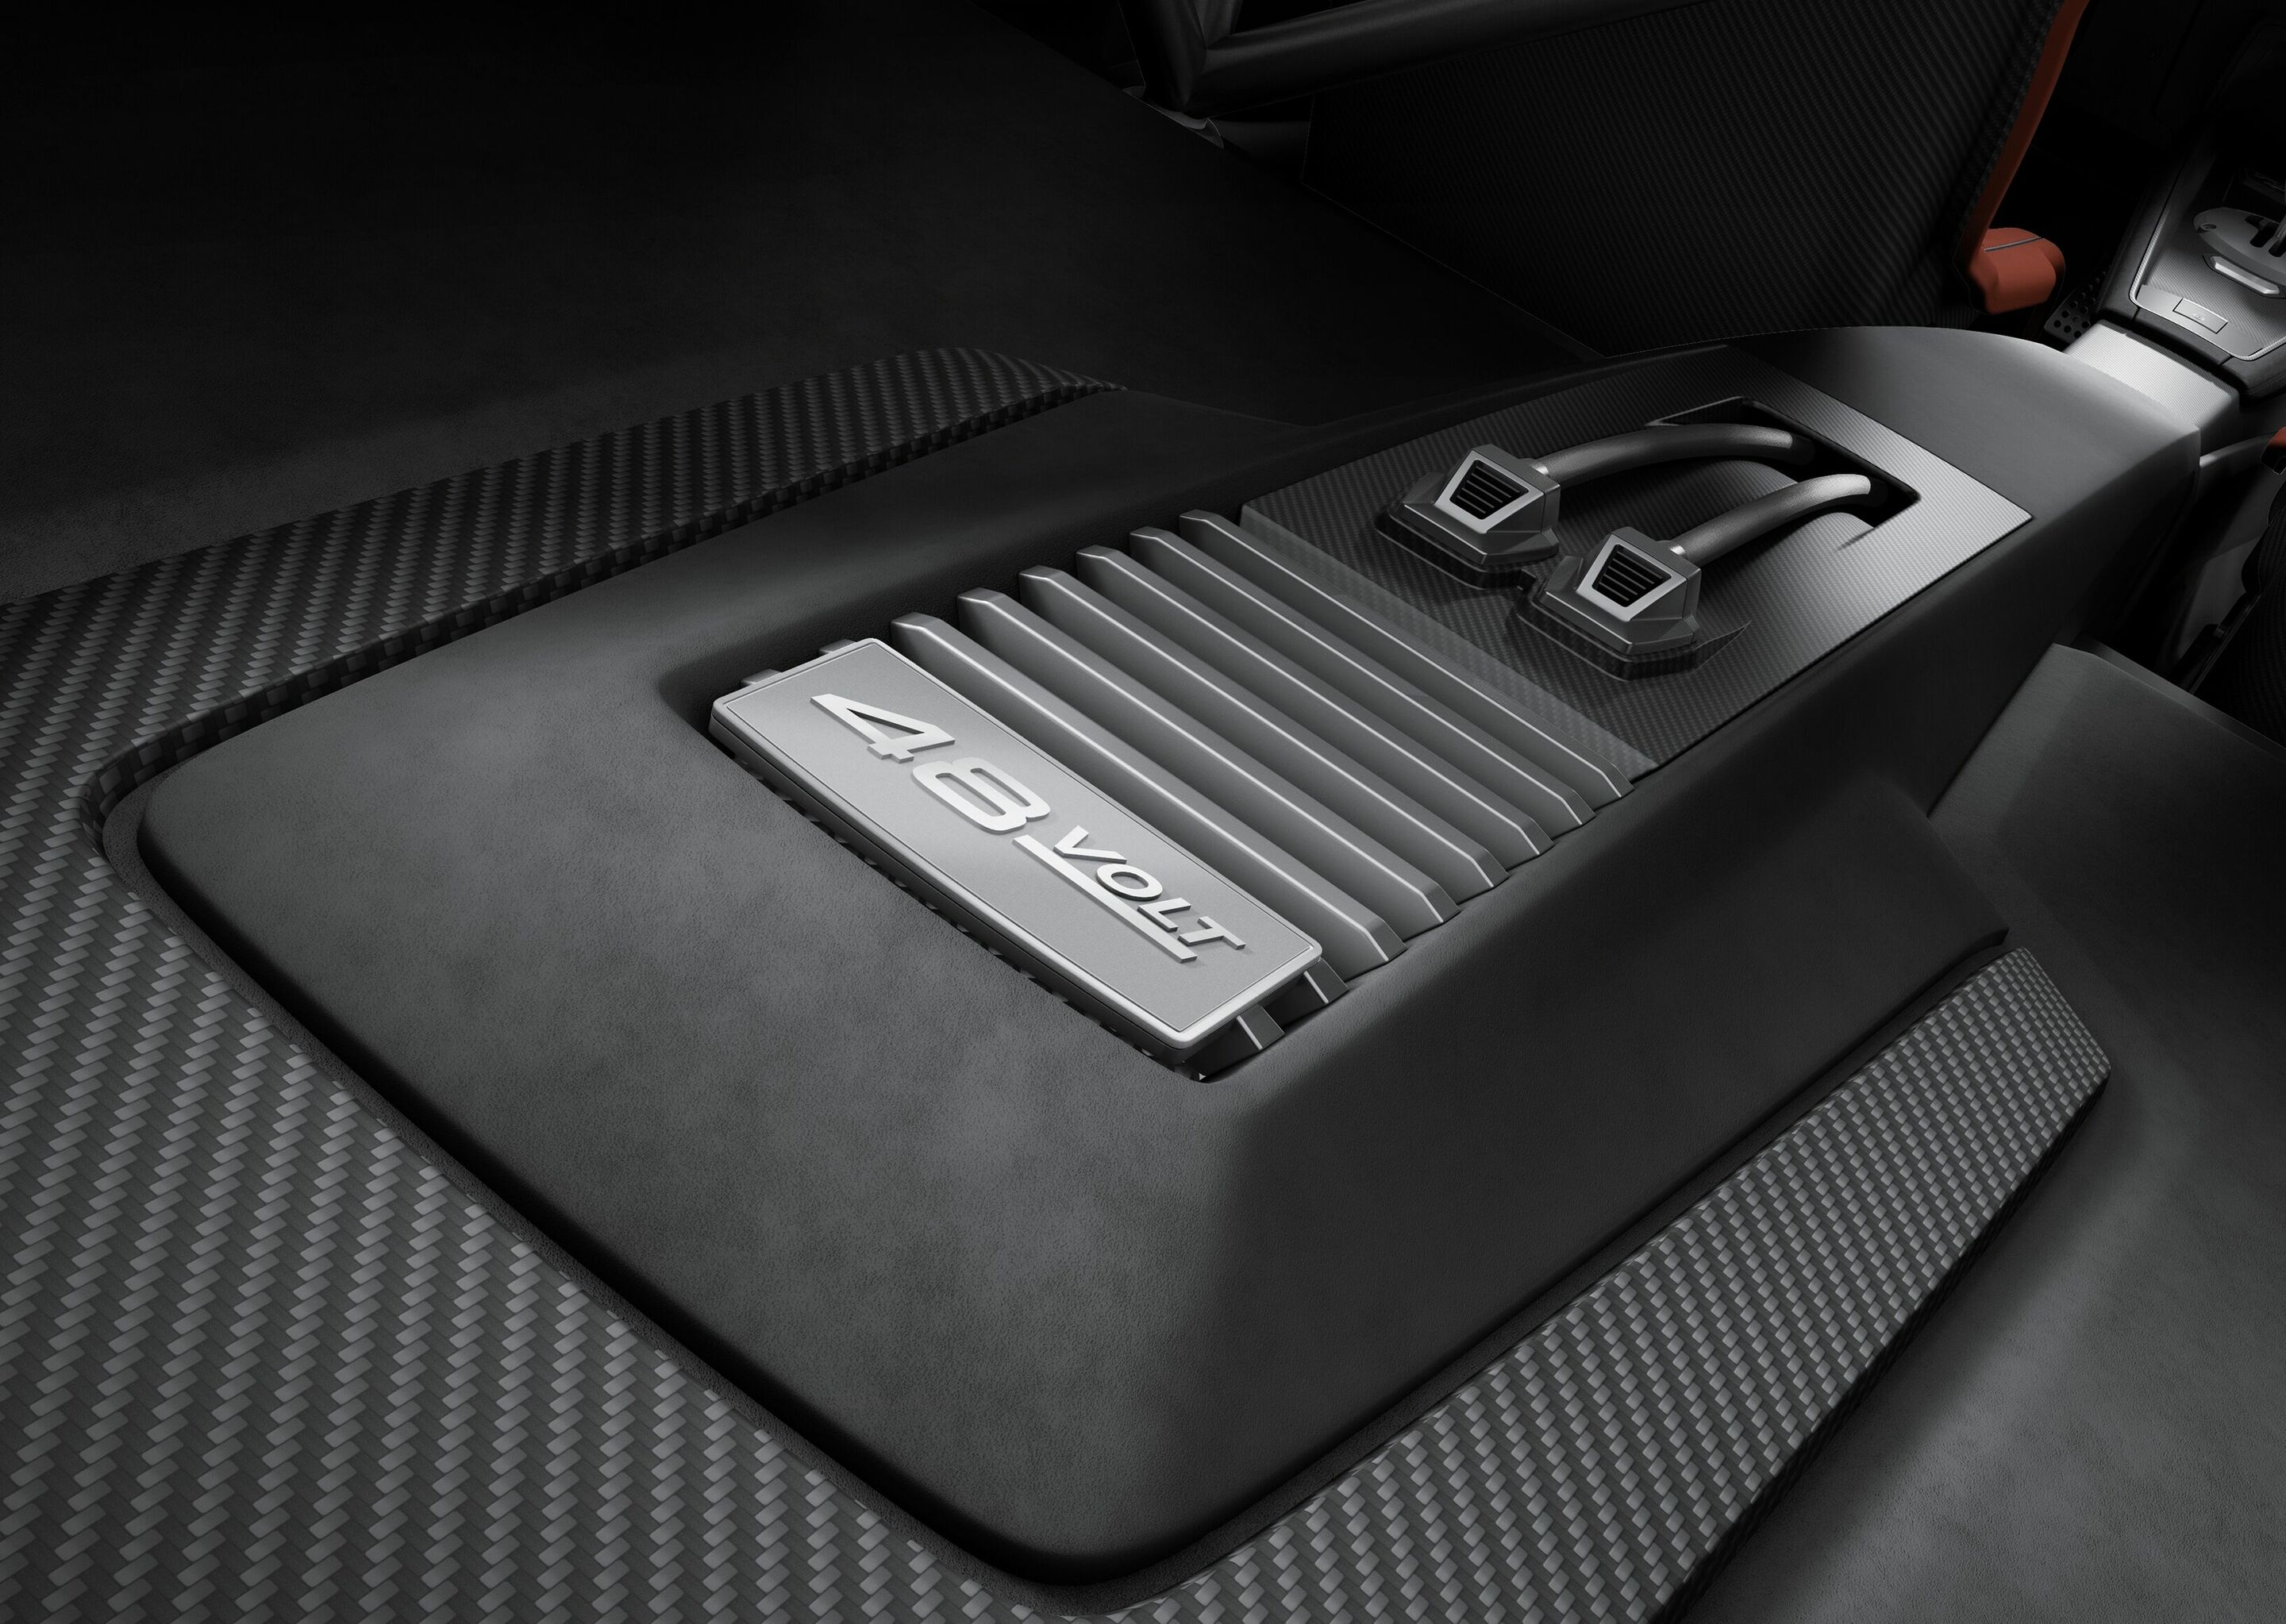 Audi TT clubsport quattro concept